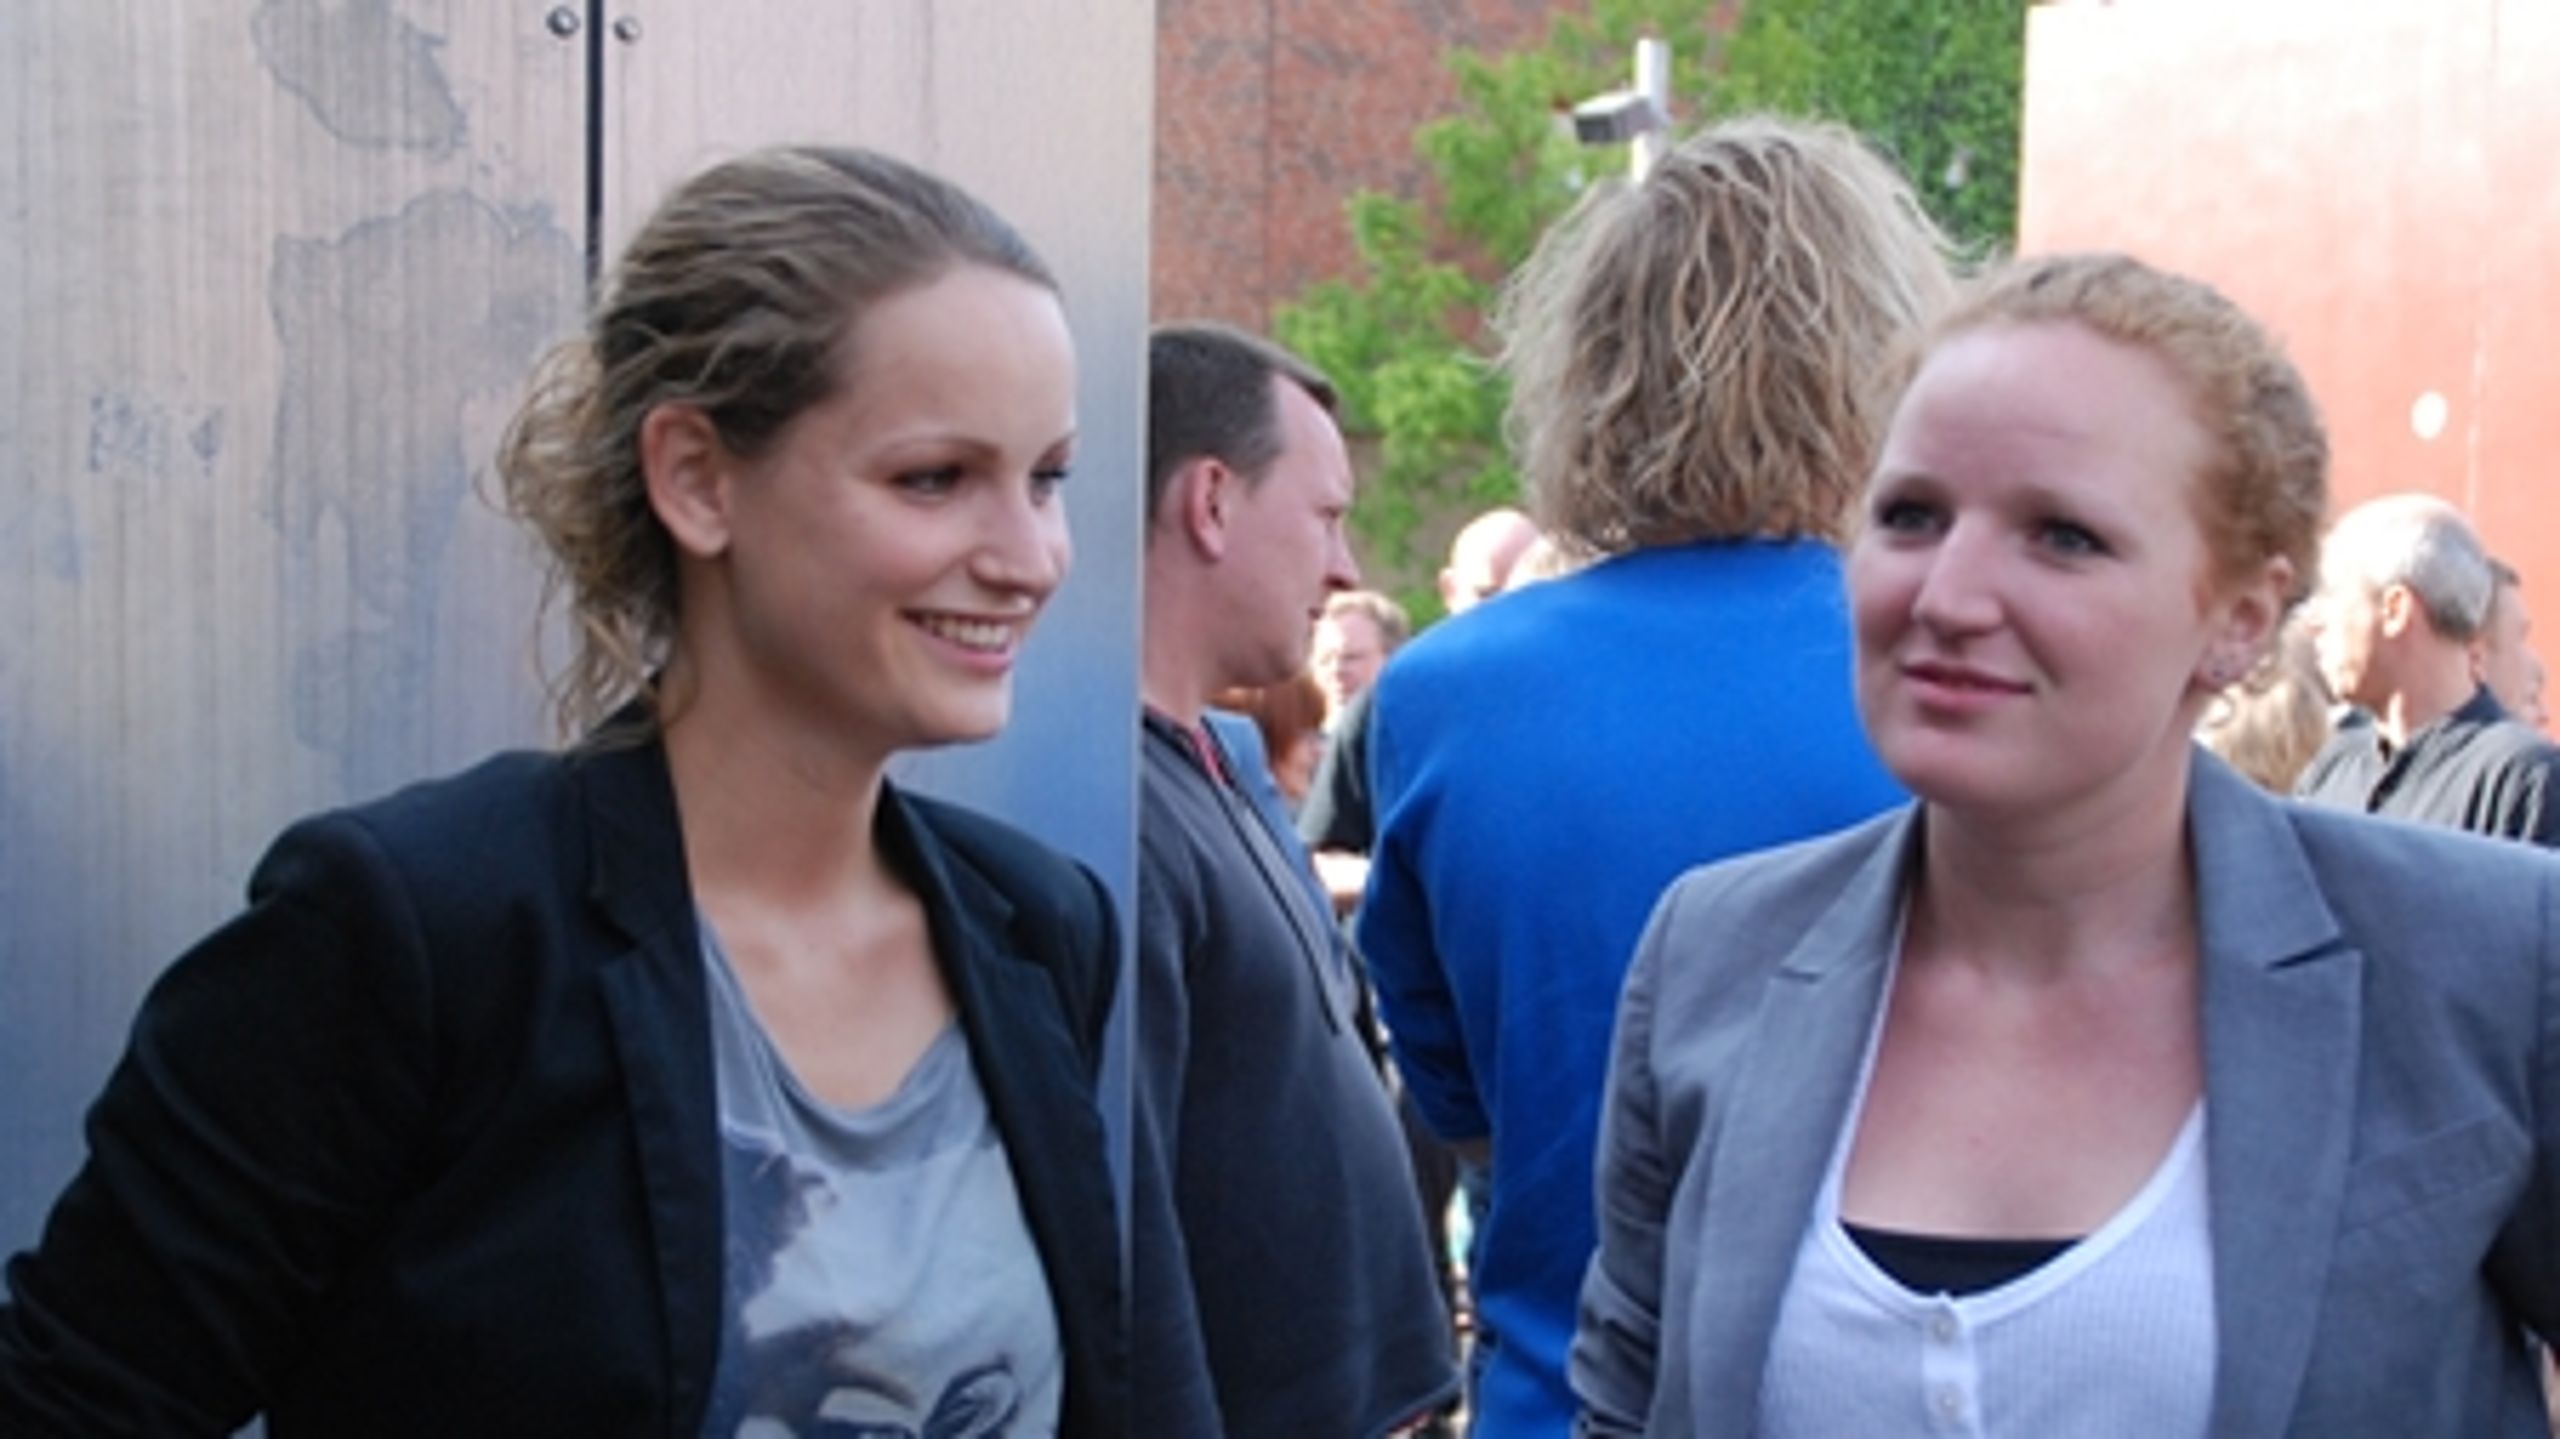 26-årige jurastuderende Pernille Skipper og 24-årige statskundskabstuderende Rosa Lund står til at komme i Folketinget for Enhedslisten, hvis de gode meningsmålinger holder på valgdagen.